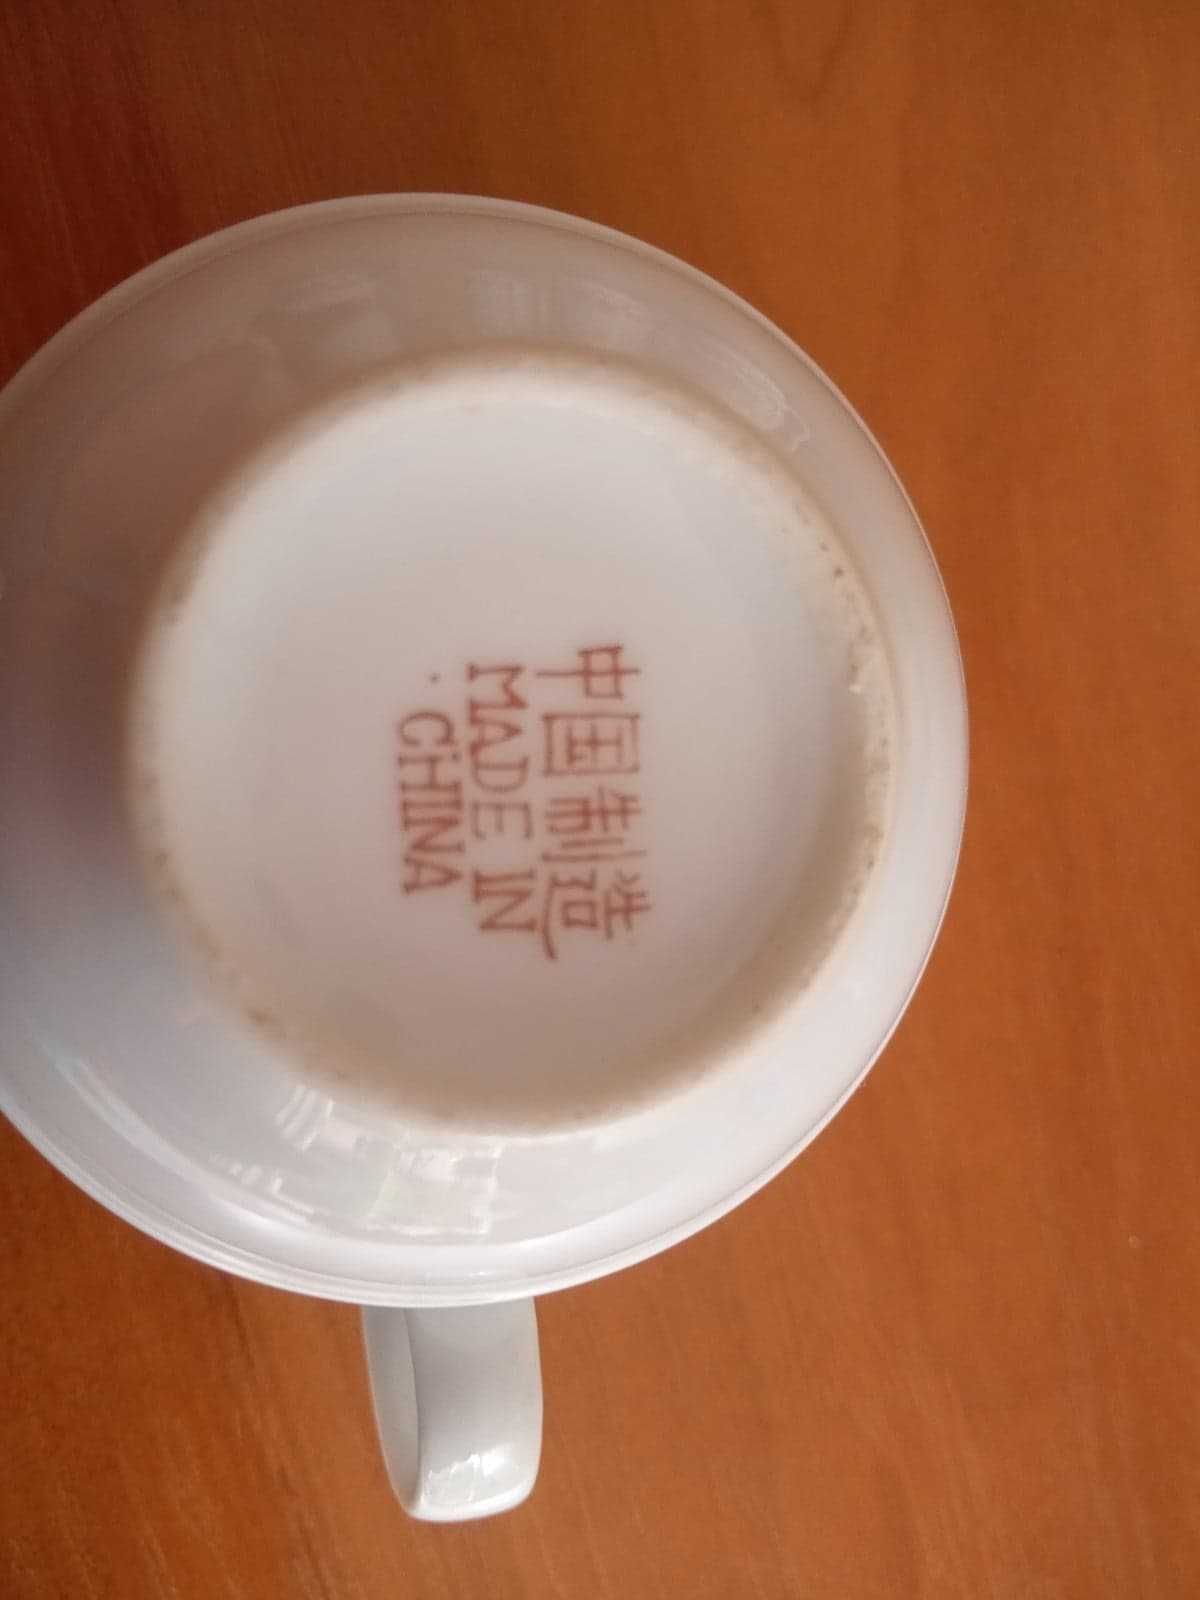 zestaw expresso chińska porcelana 5 filiżanek do kawy kultowy PRL